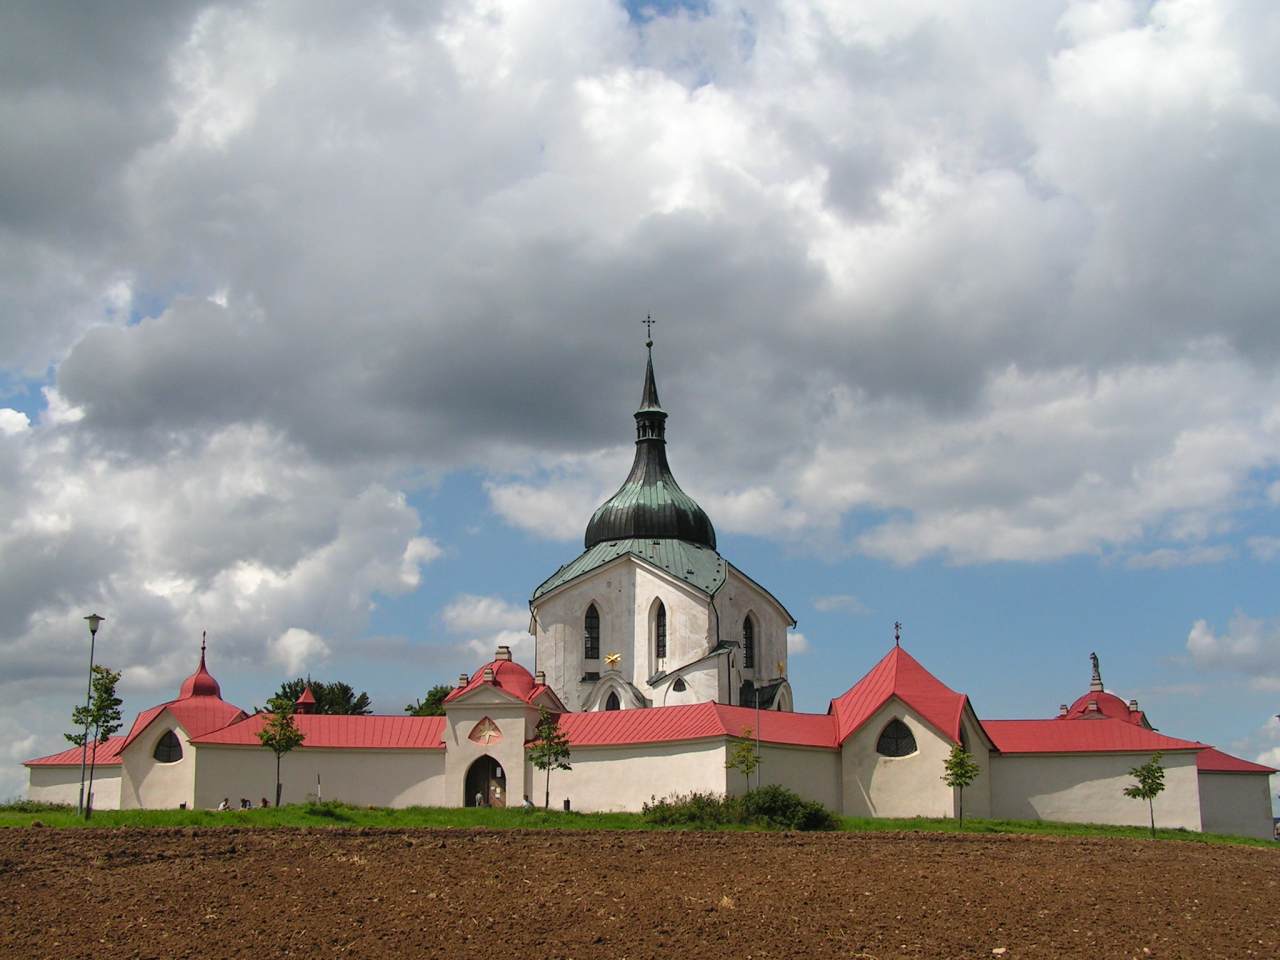 Pilgrimage church of st. Jan Nepomucký, Žďár nad Sázavou, Czech Republic